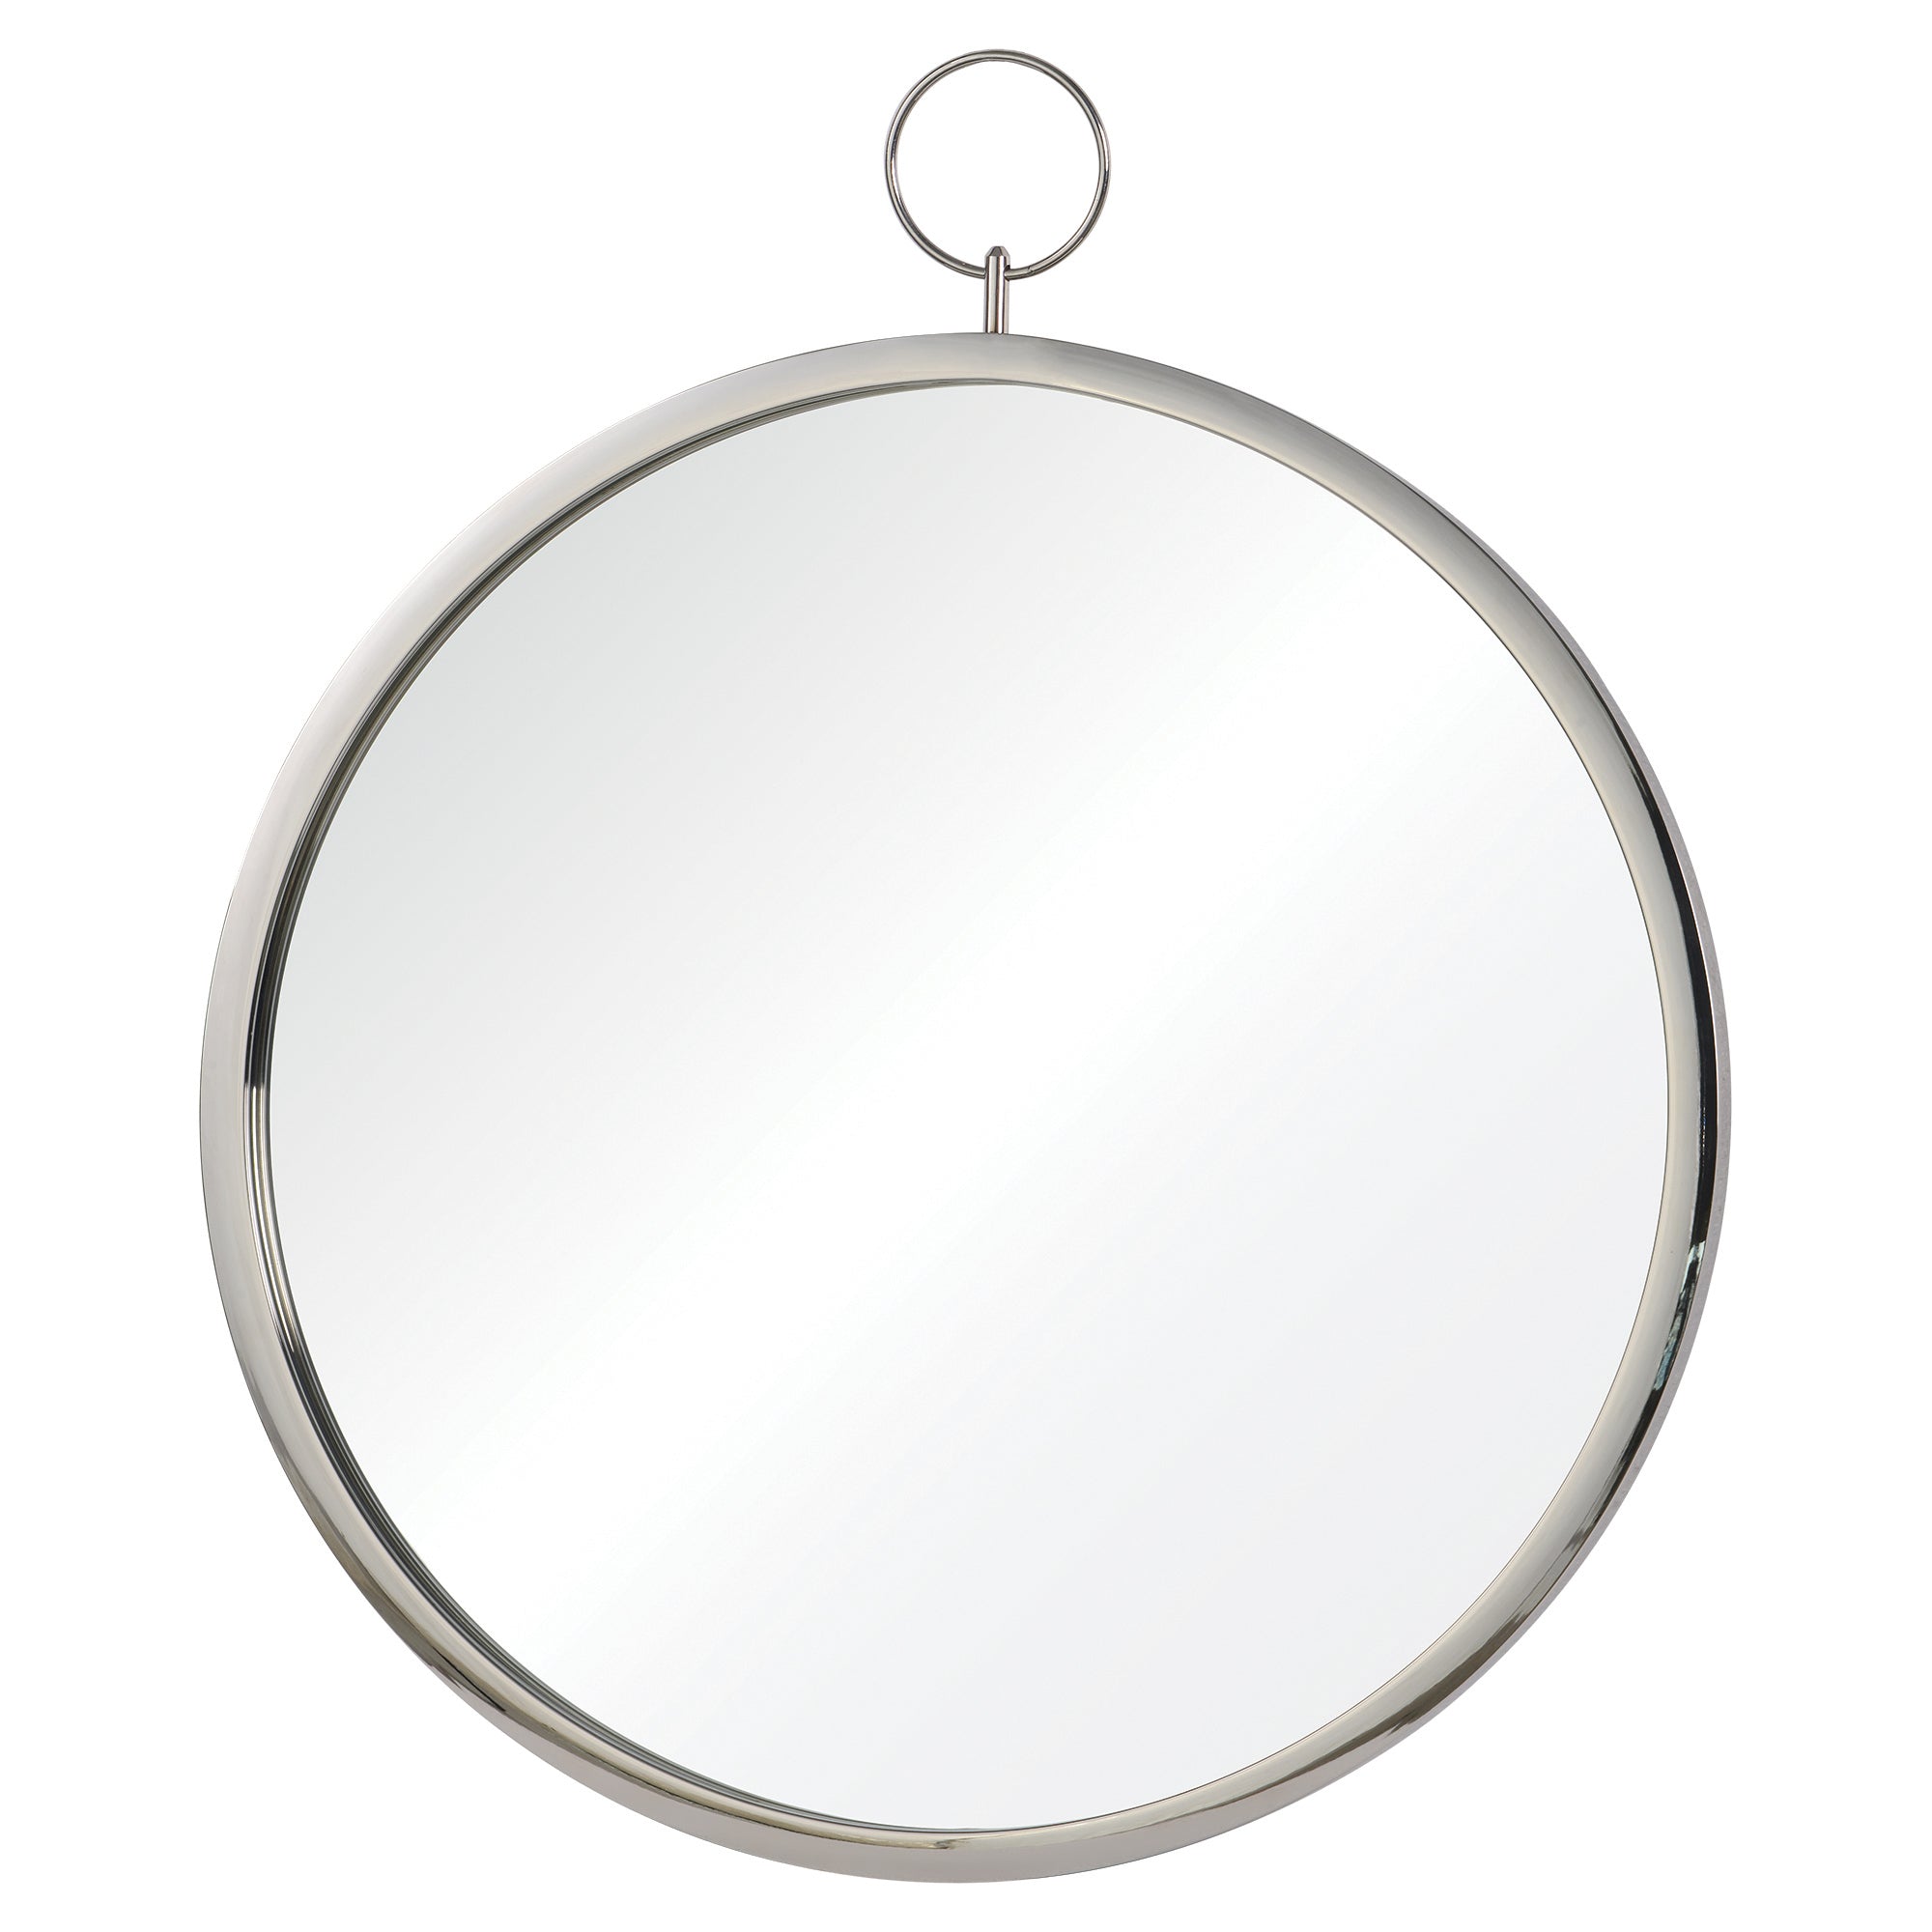 title:Porto Mirror - Dia 24. 30H W/Ring;color:Chrome